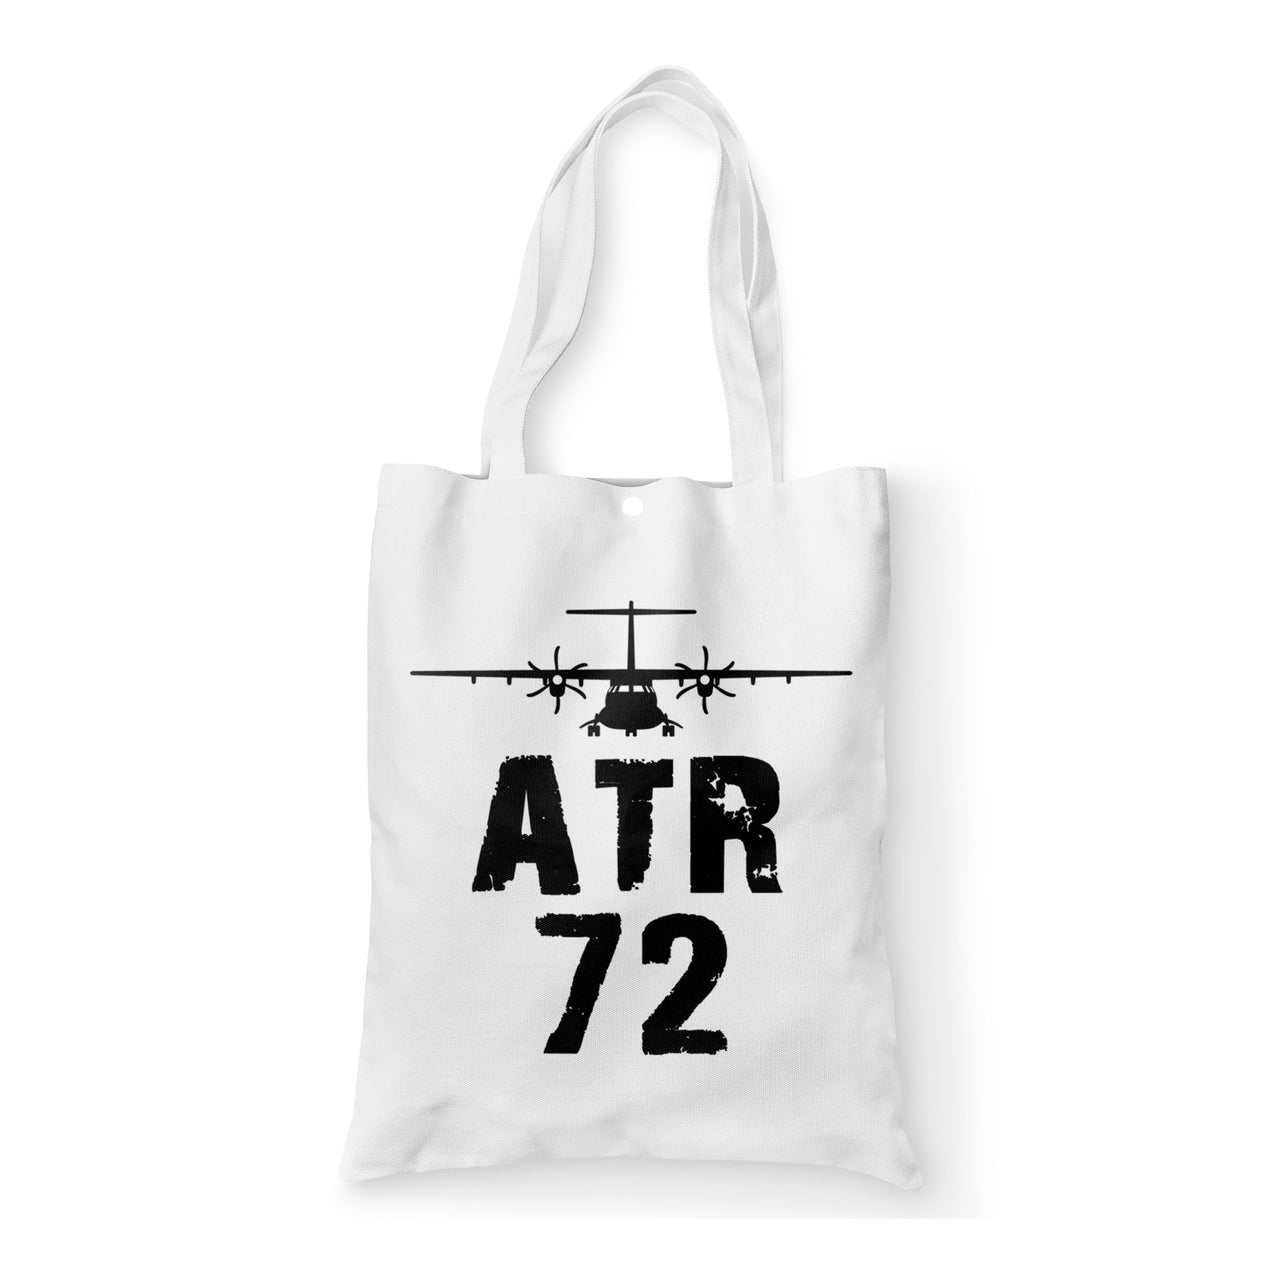 ATR-72 & Plane Designed Tote Bags